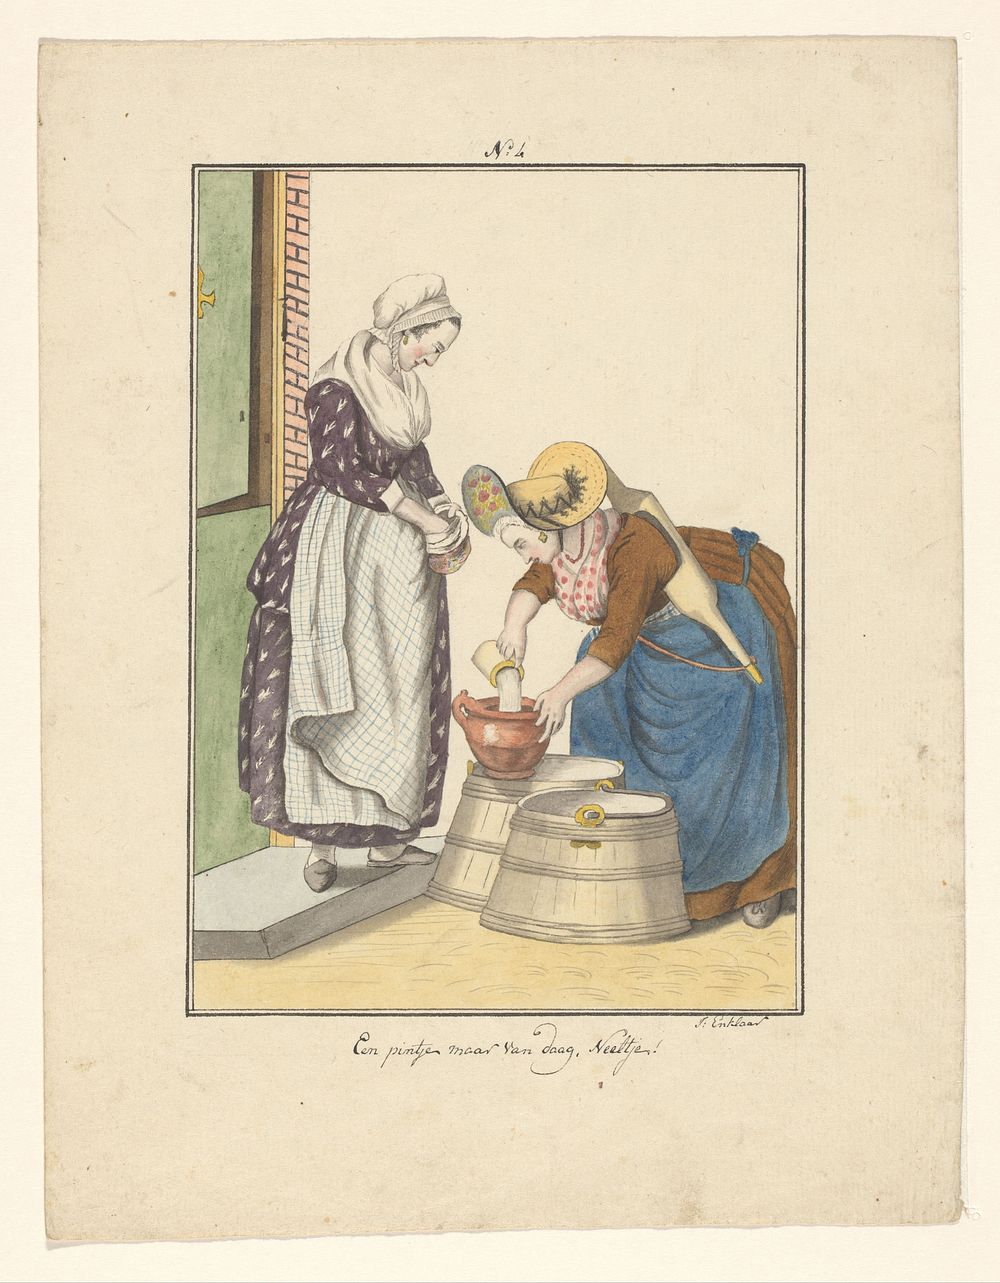 Dienstmeisje en melkverkoopster (in or after 1803 - c. 1899) by J Enklaar and Ludwig Gottlieb Portman